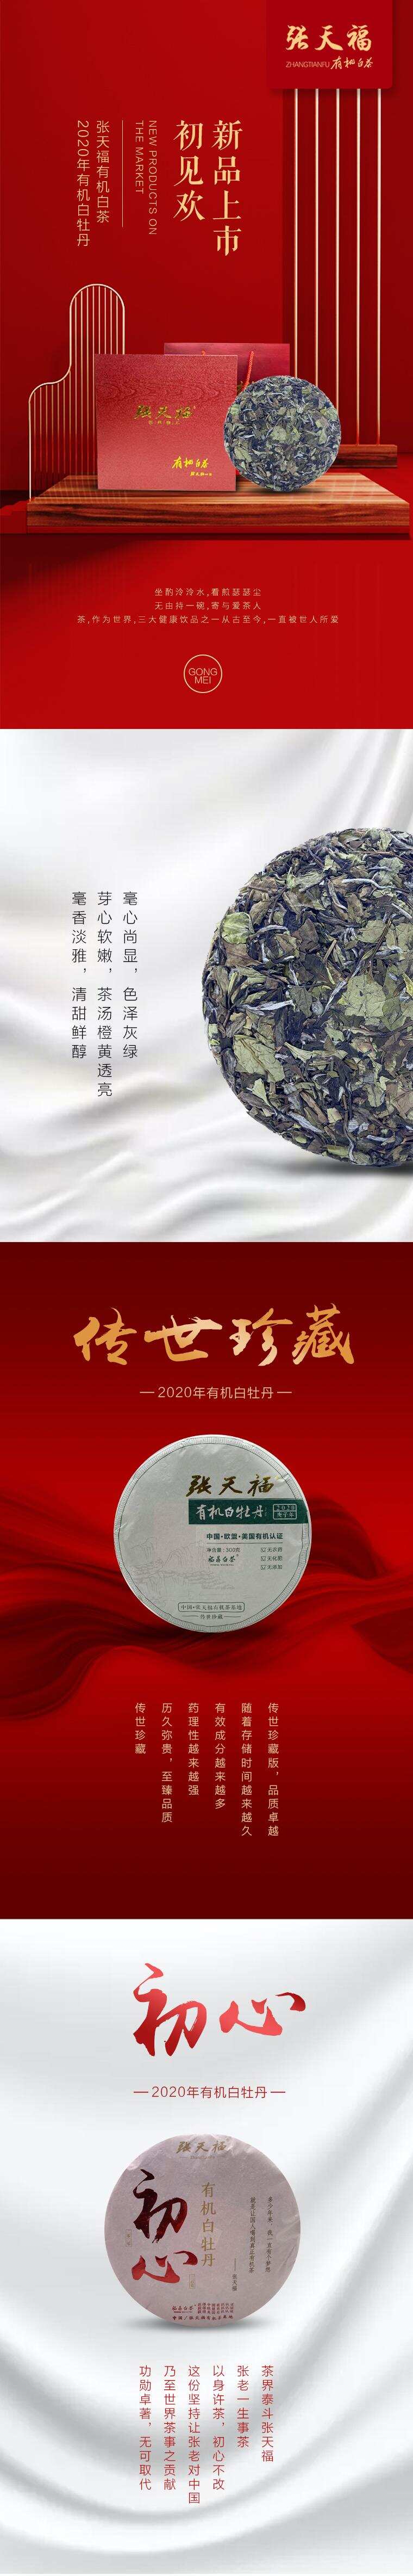 2020张天福有机白茶 新品上市初见欢「有机白牡丹」